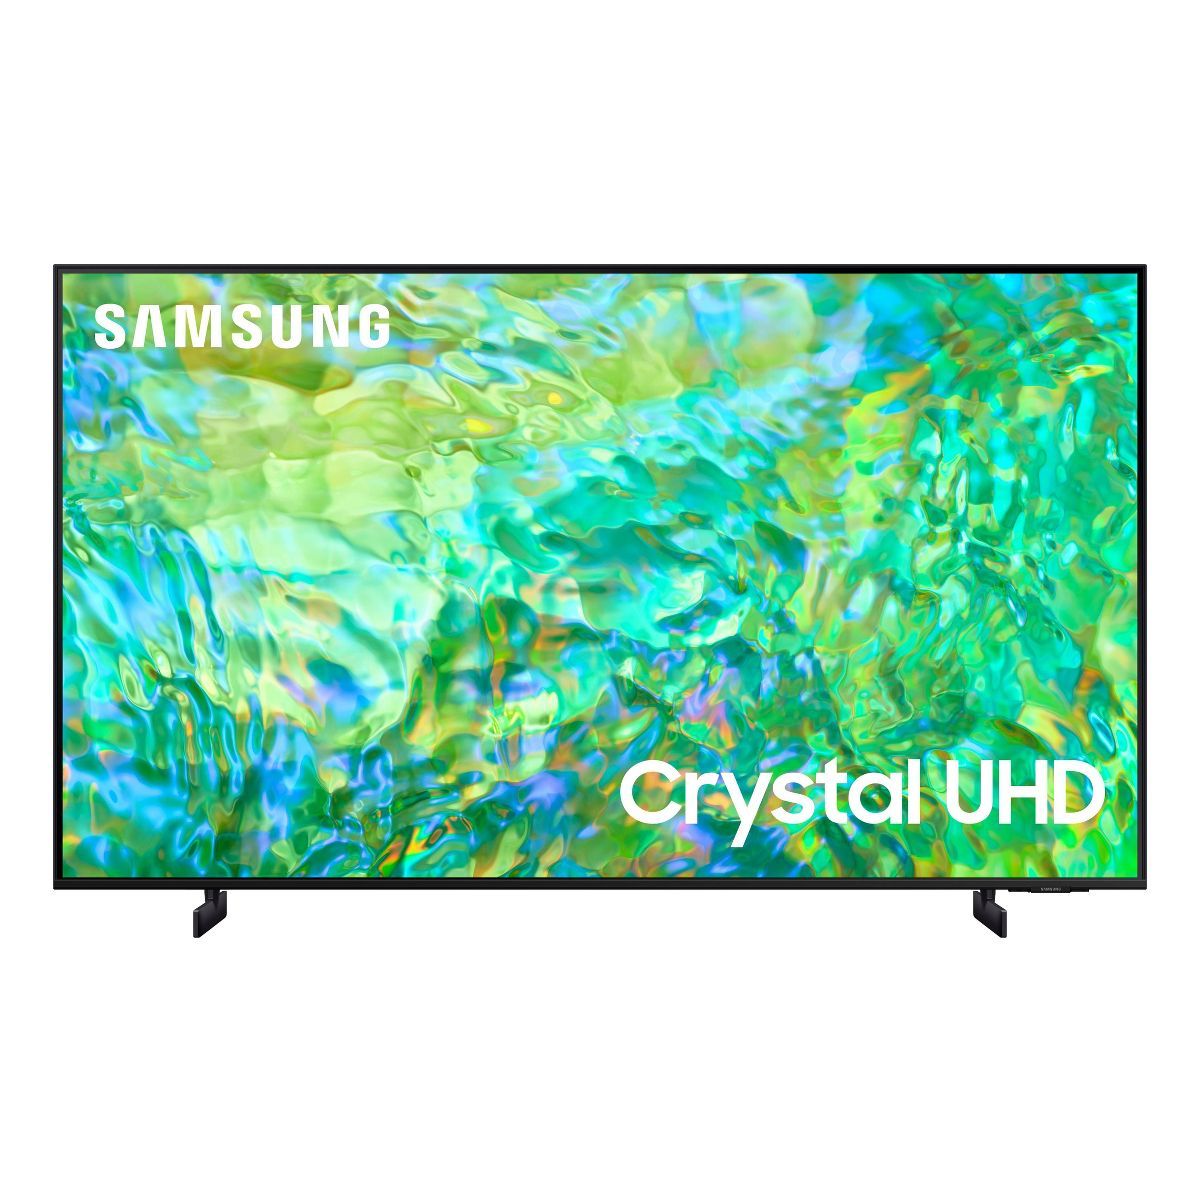 Samsung 65" class CU8000 UHD 4K Smart TV - Black (UN65CU8000) | Target